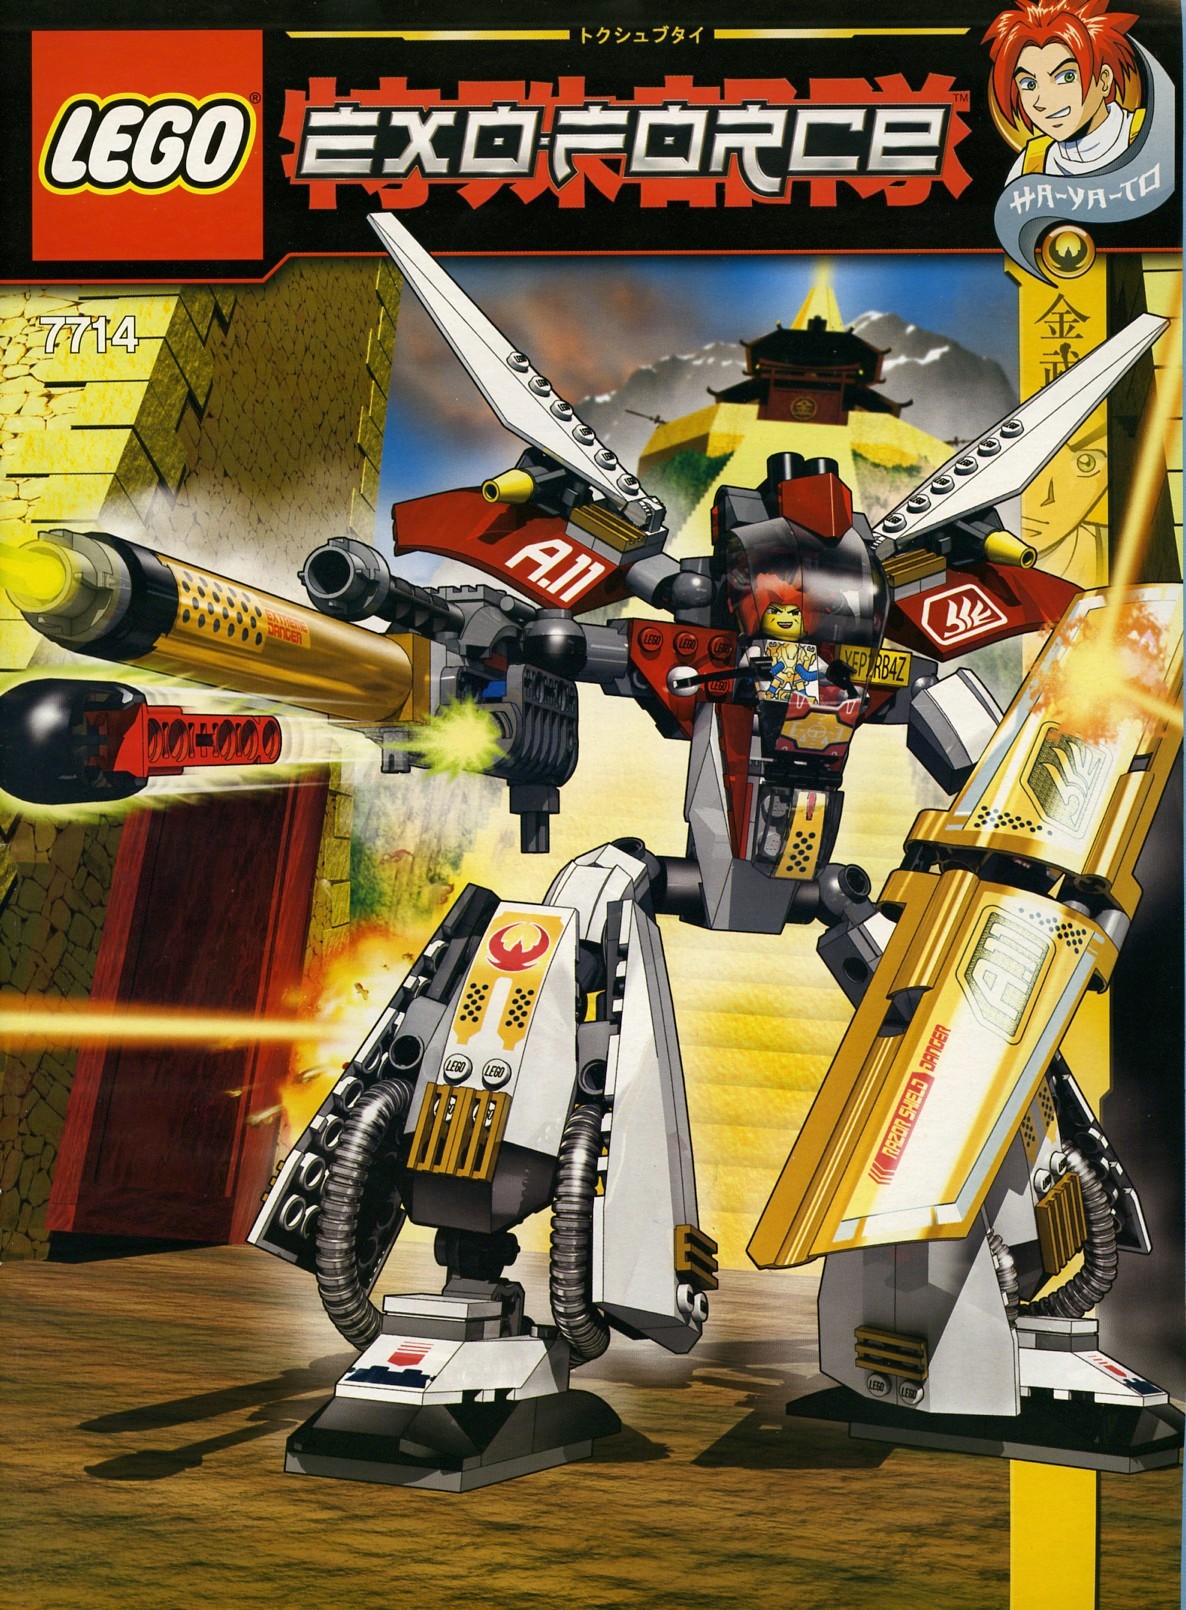 Exo-Force | Brickset: LEGO set guide and database